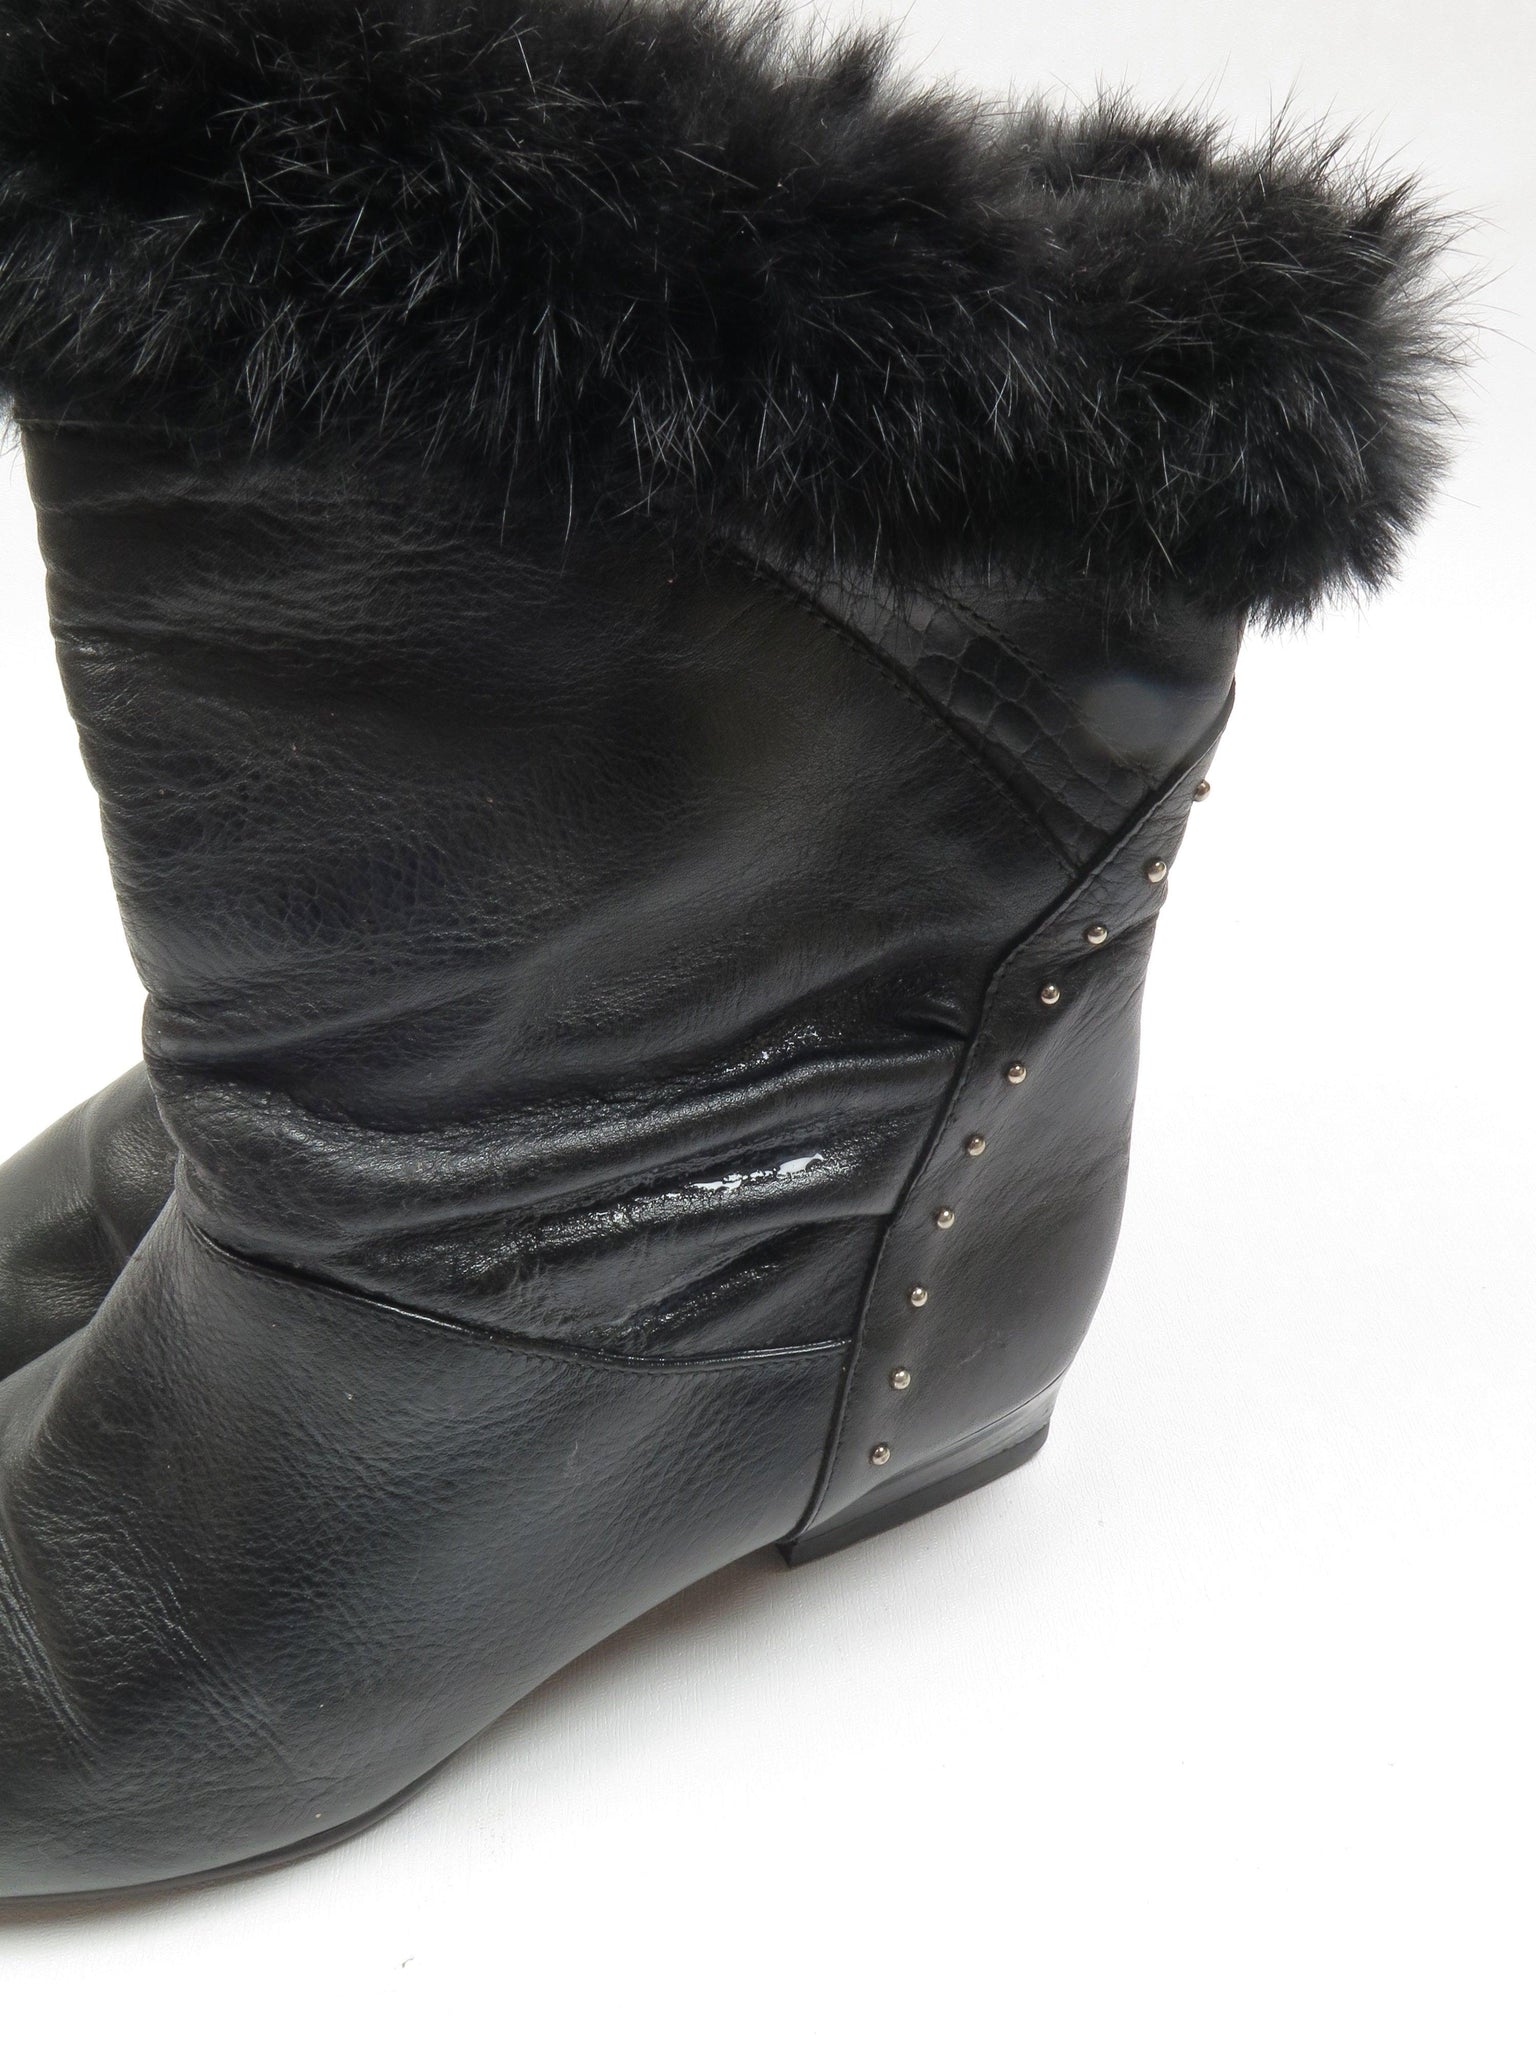 Black Short Vintage Leather Boots 7/40 - The Harlequin